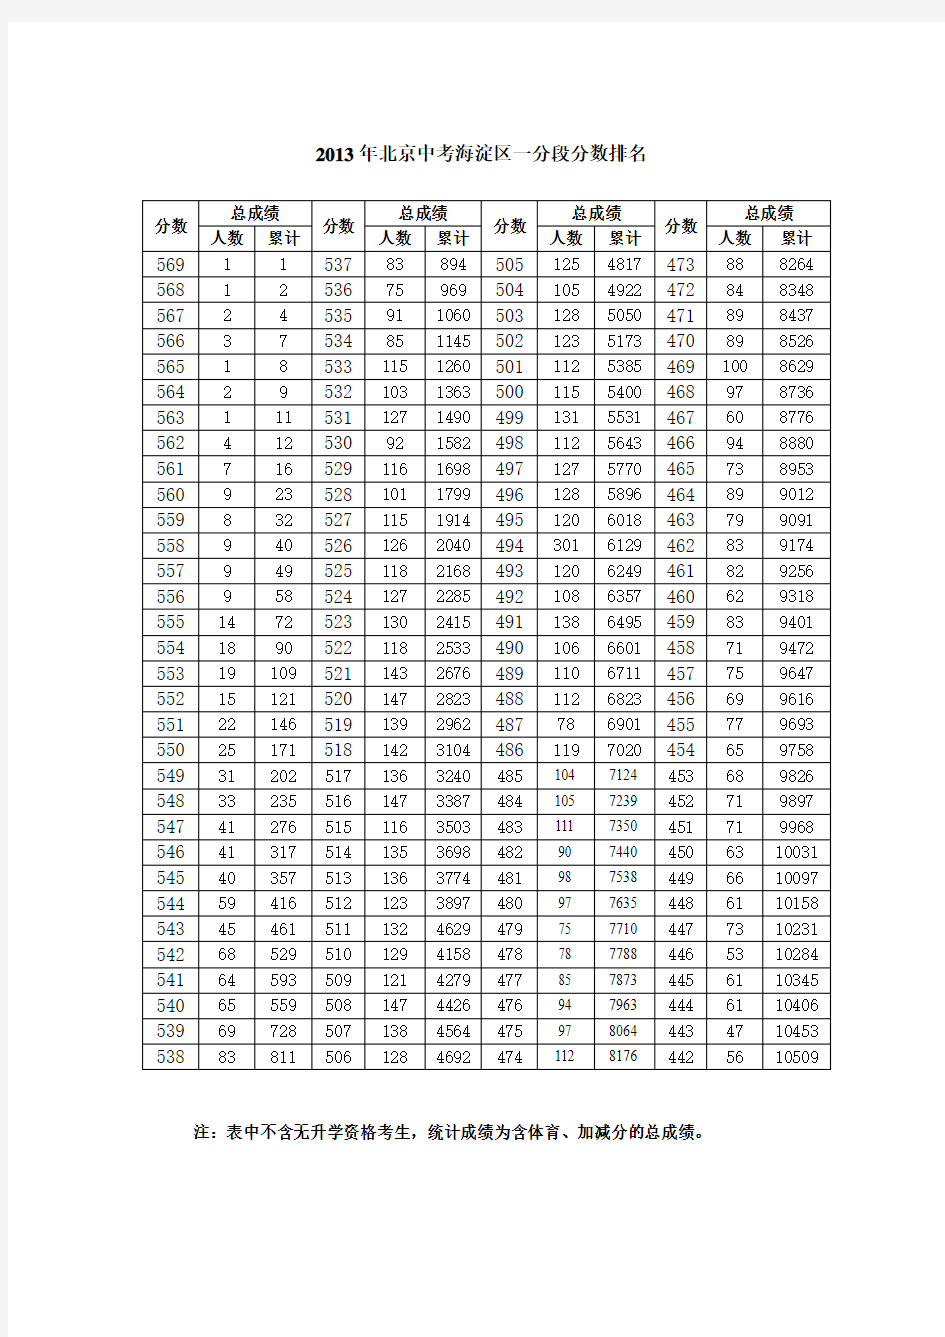 2013年北京中考海淀区一分段分数排名